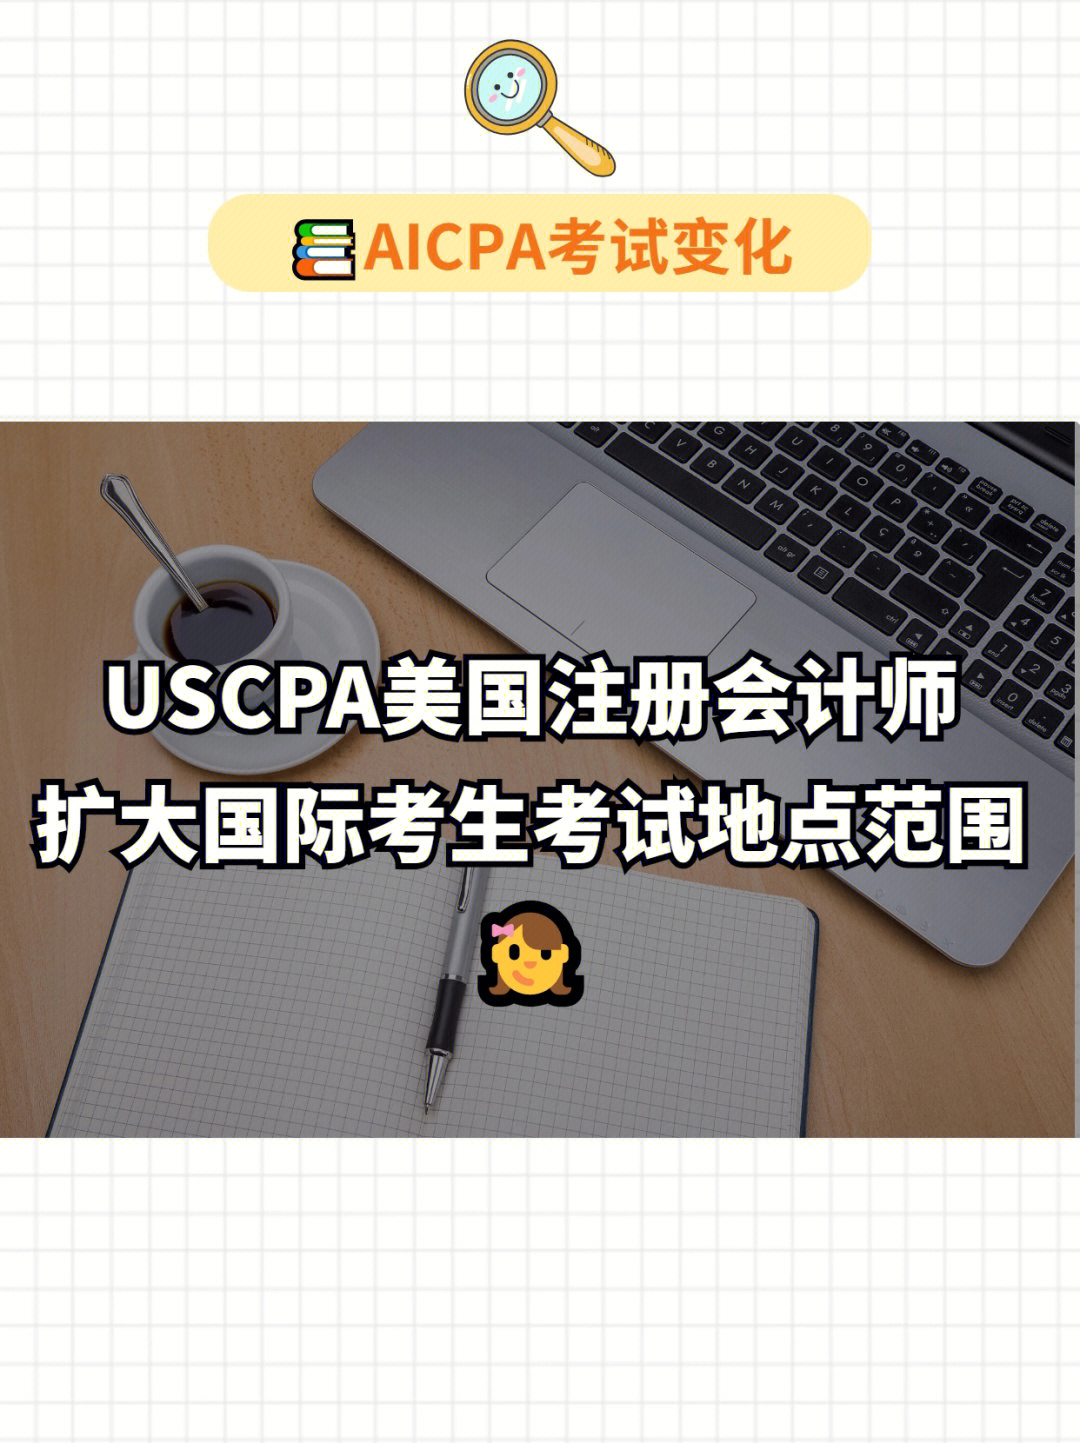 90uscpa美国注册会计师考试国际考点扩大